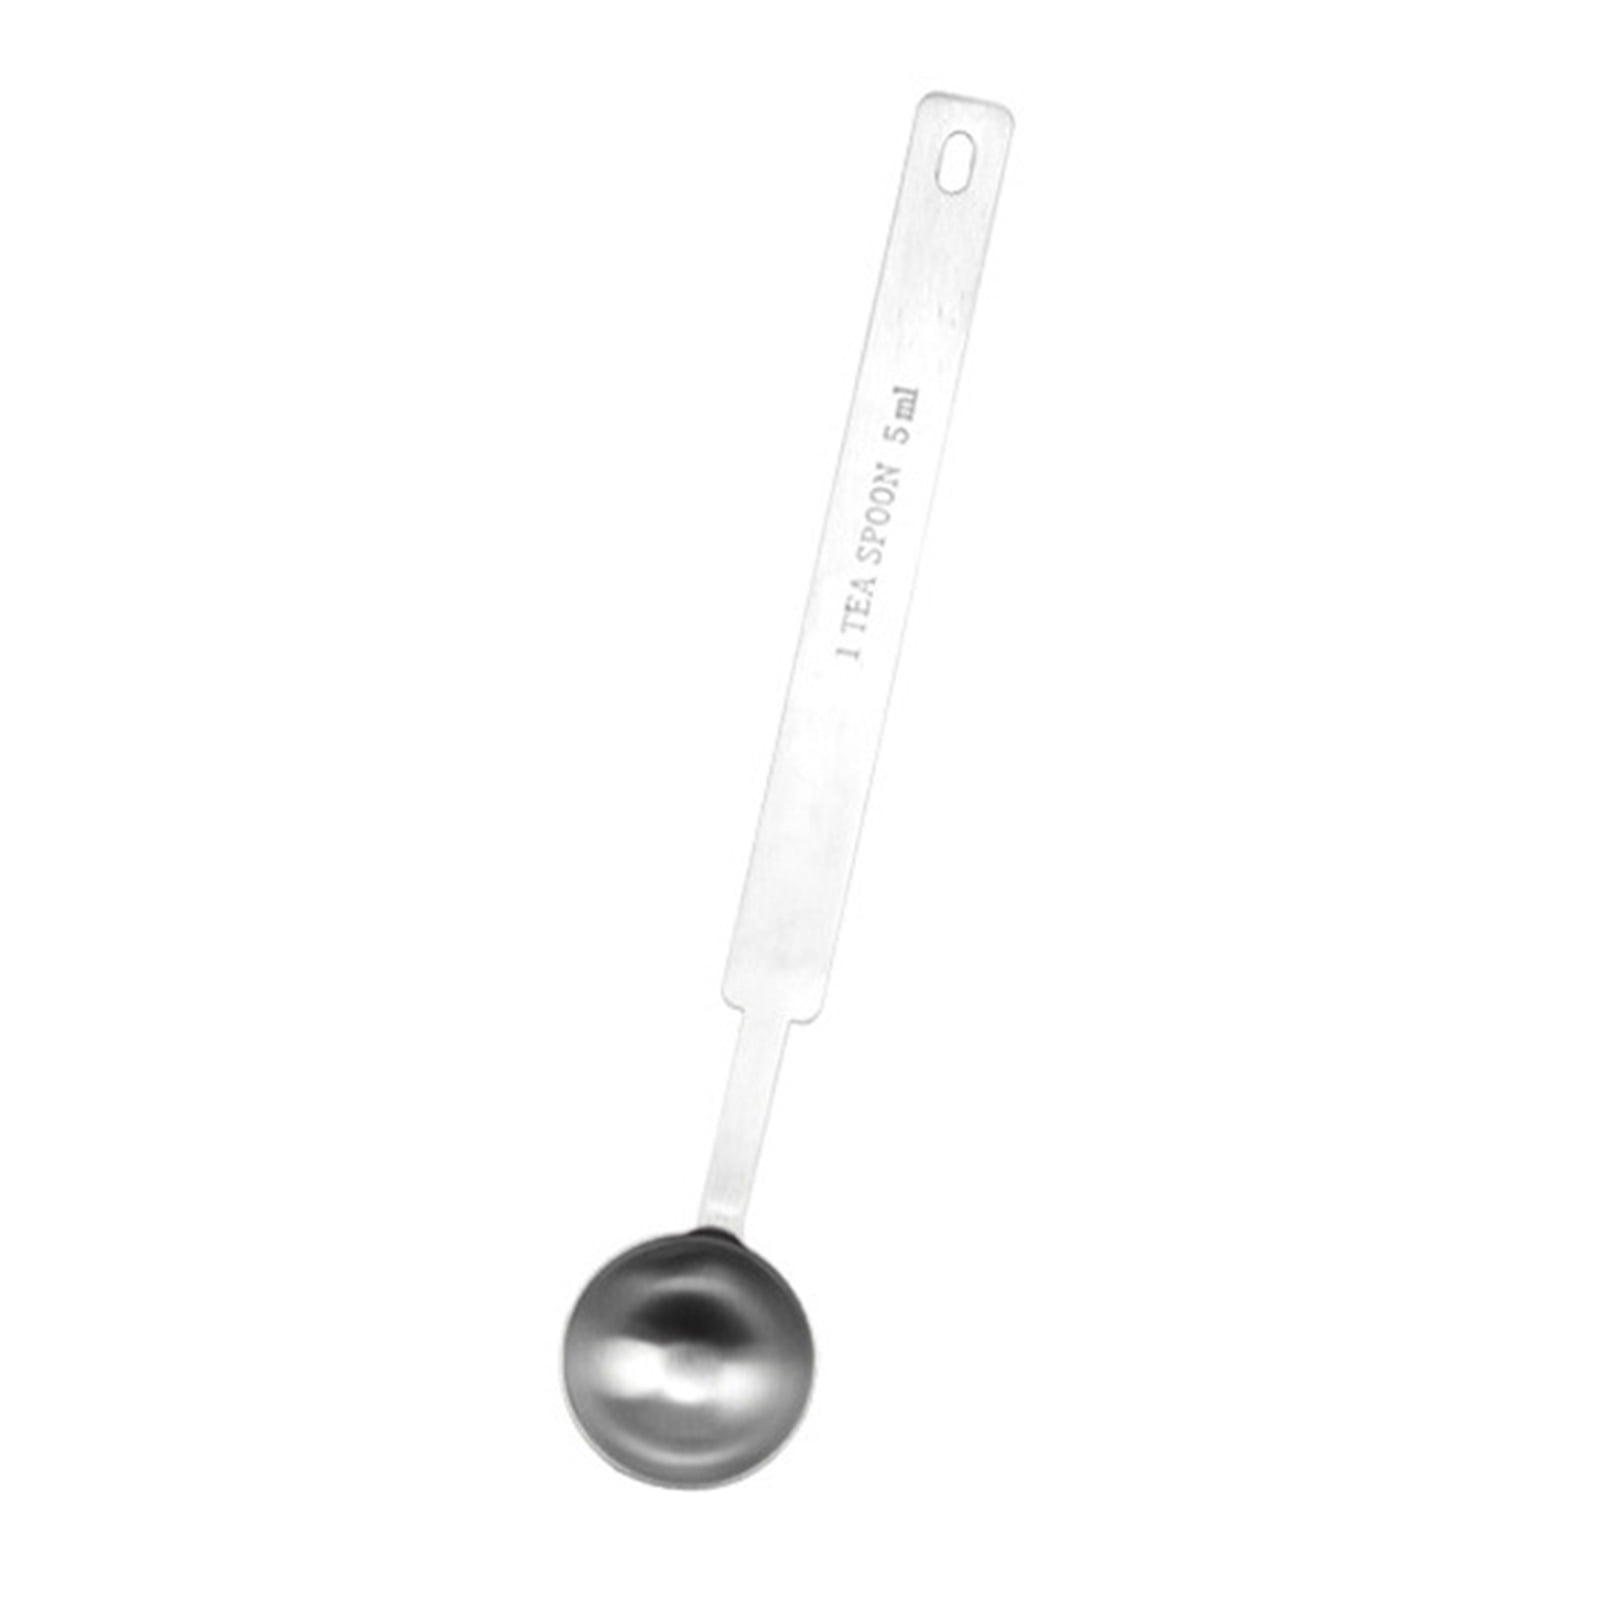 Coffee Scoop 5Ml & 15Ml Long Handle Stainless Steel Teaspoon & Tablespoon  1Pc (1